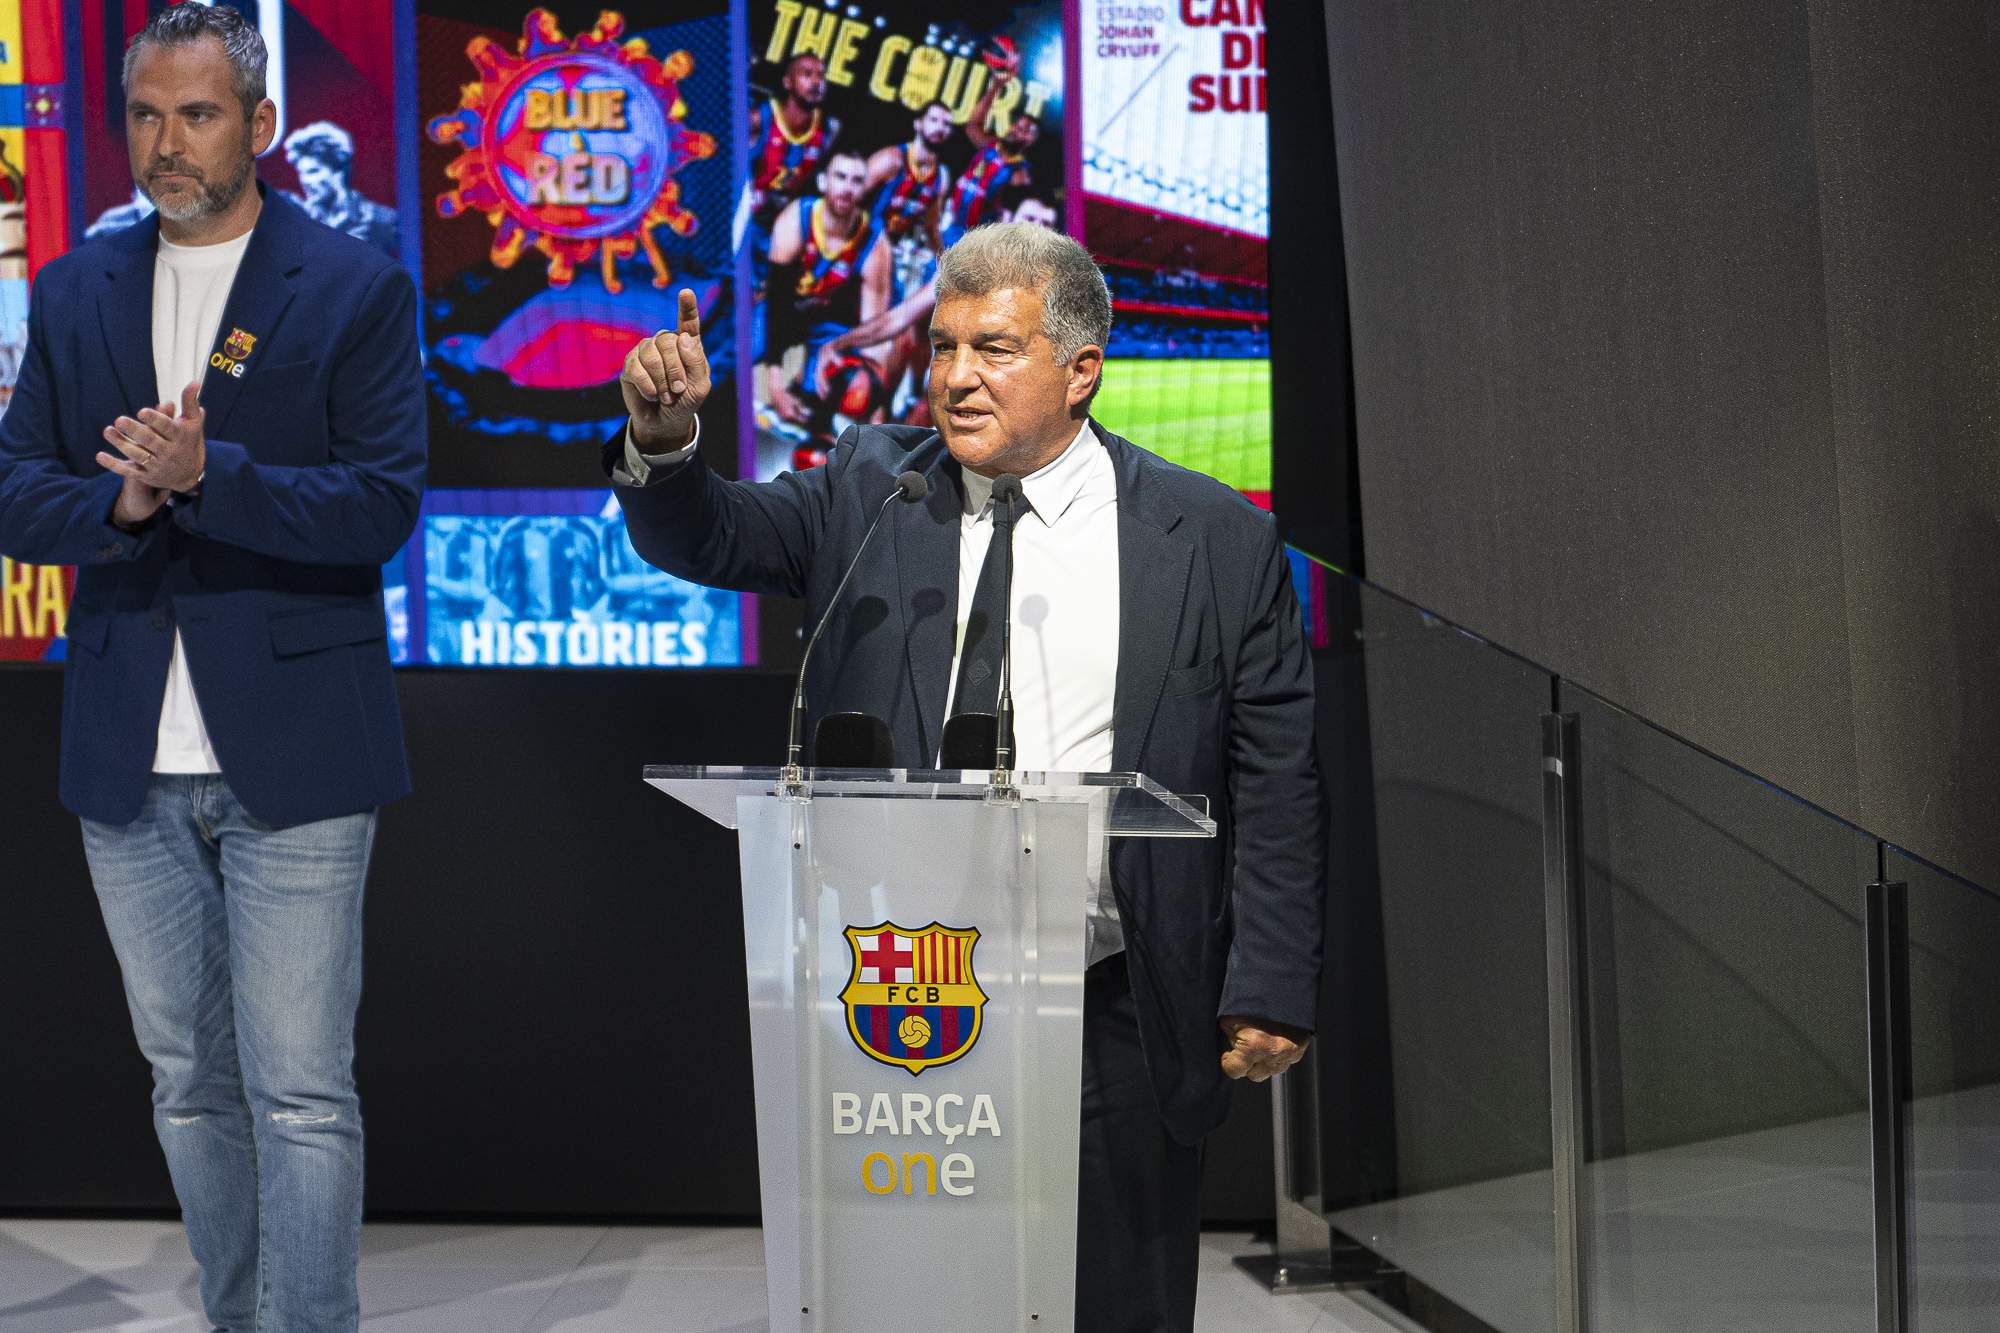 El Barça presenta Barça One, la nova plataforma gratuïta de 'streaming' del club baugrana